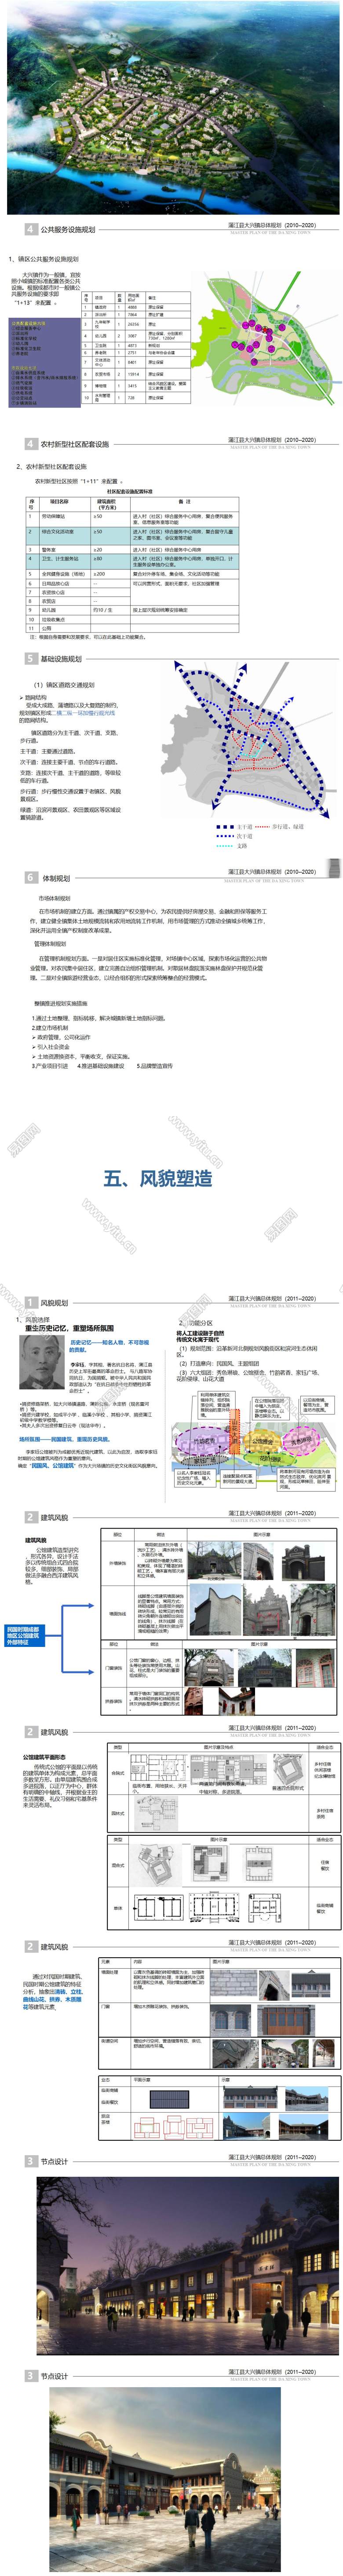 3 蒲江县大兴镇总体规划2011-2020_01.jpg